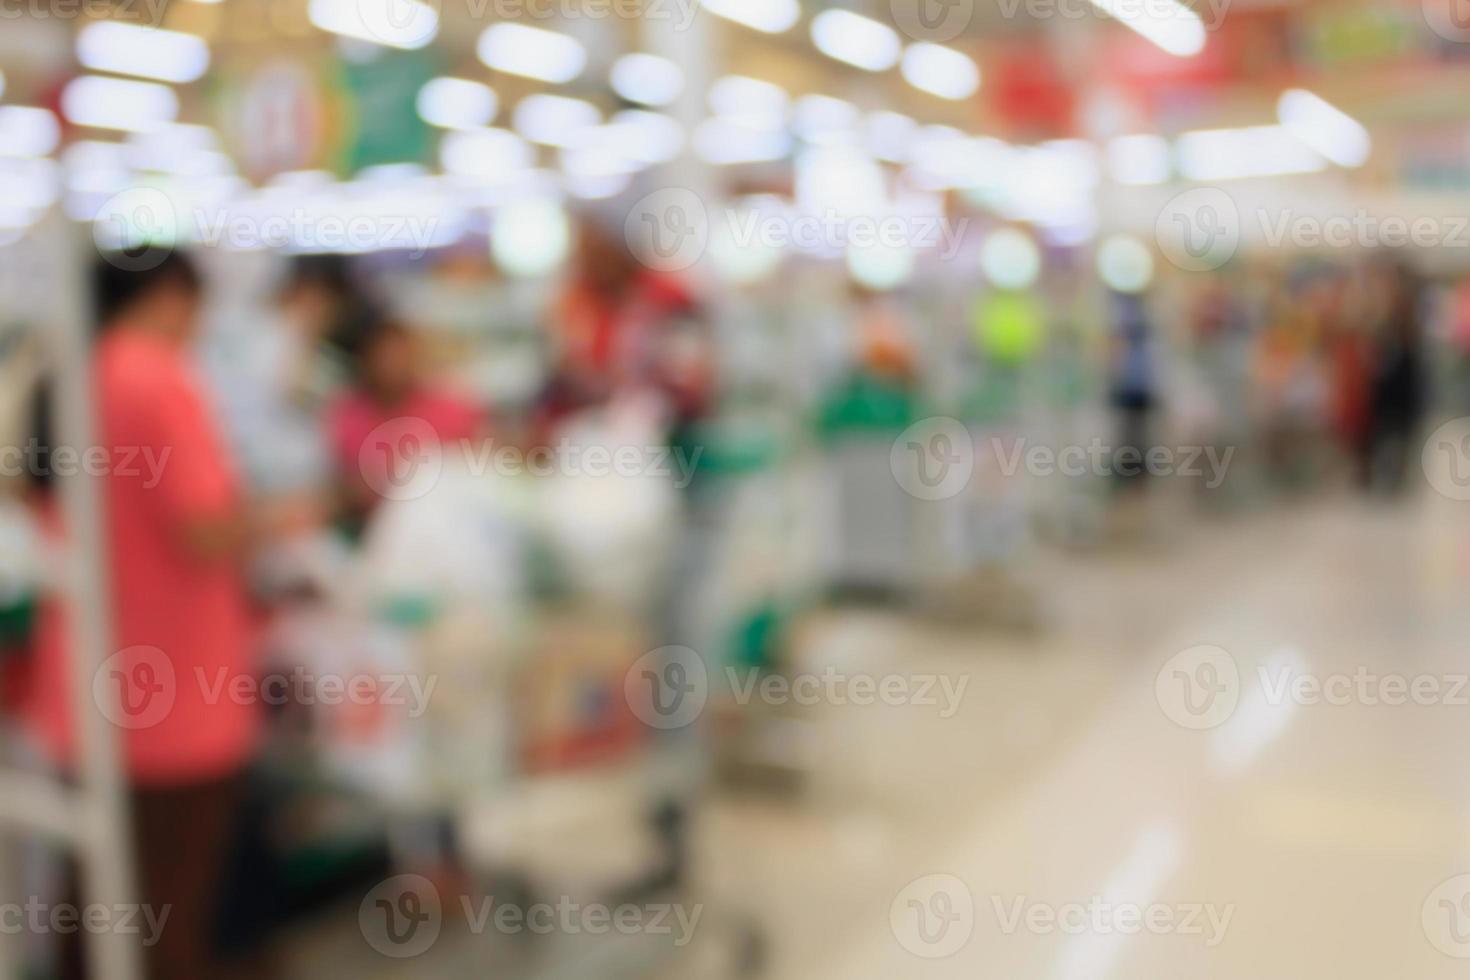 terminal de pagamento de checkout de supermercado com fundo desfocado de clientes foto